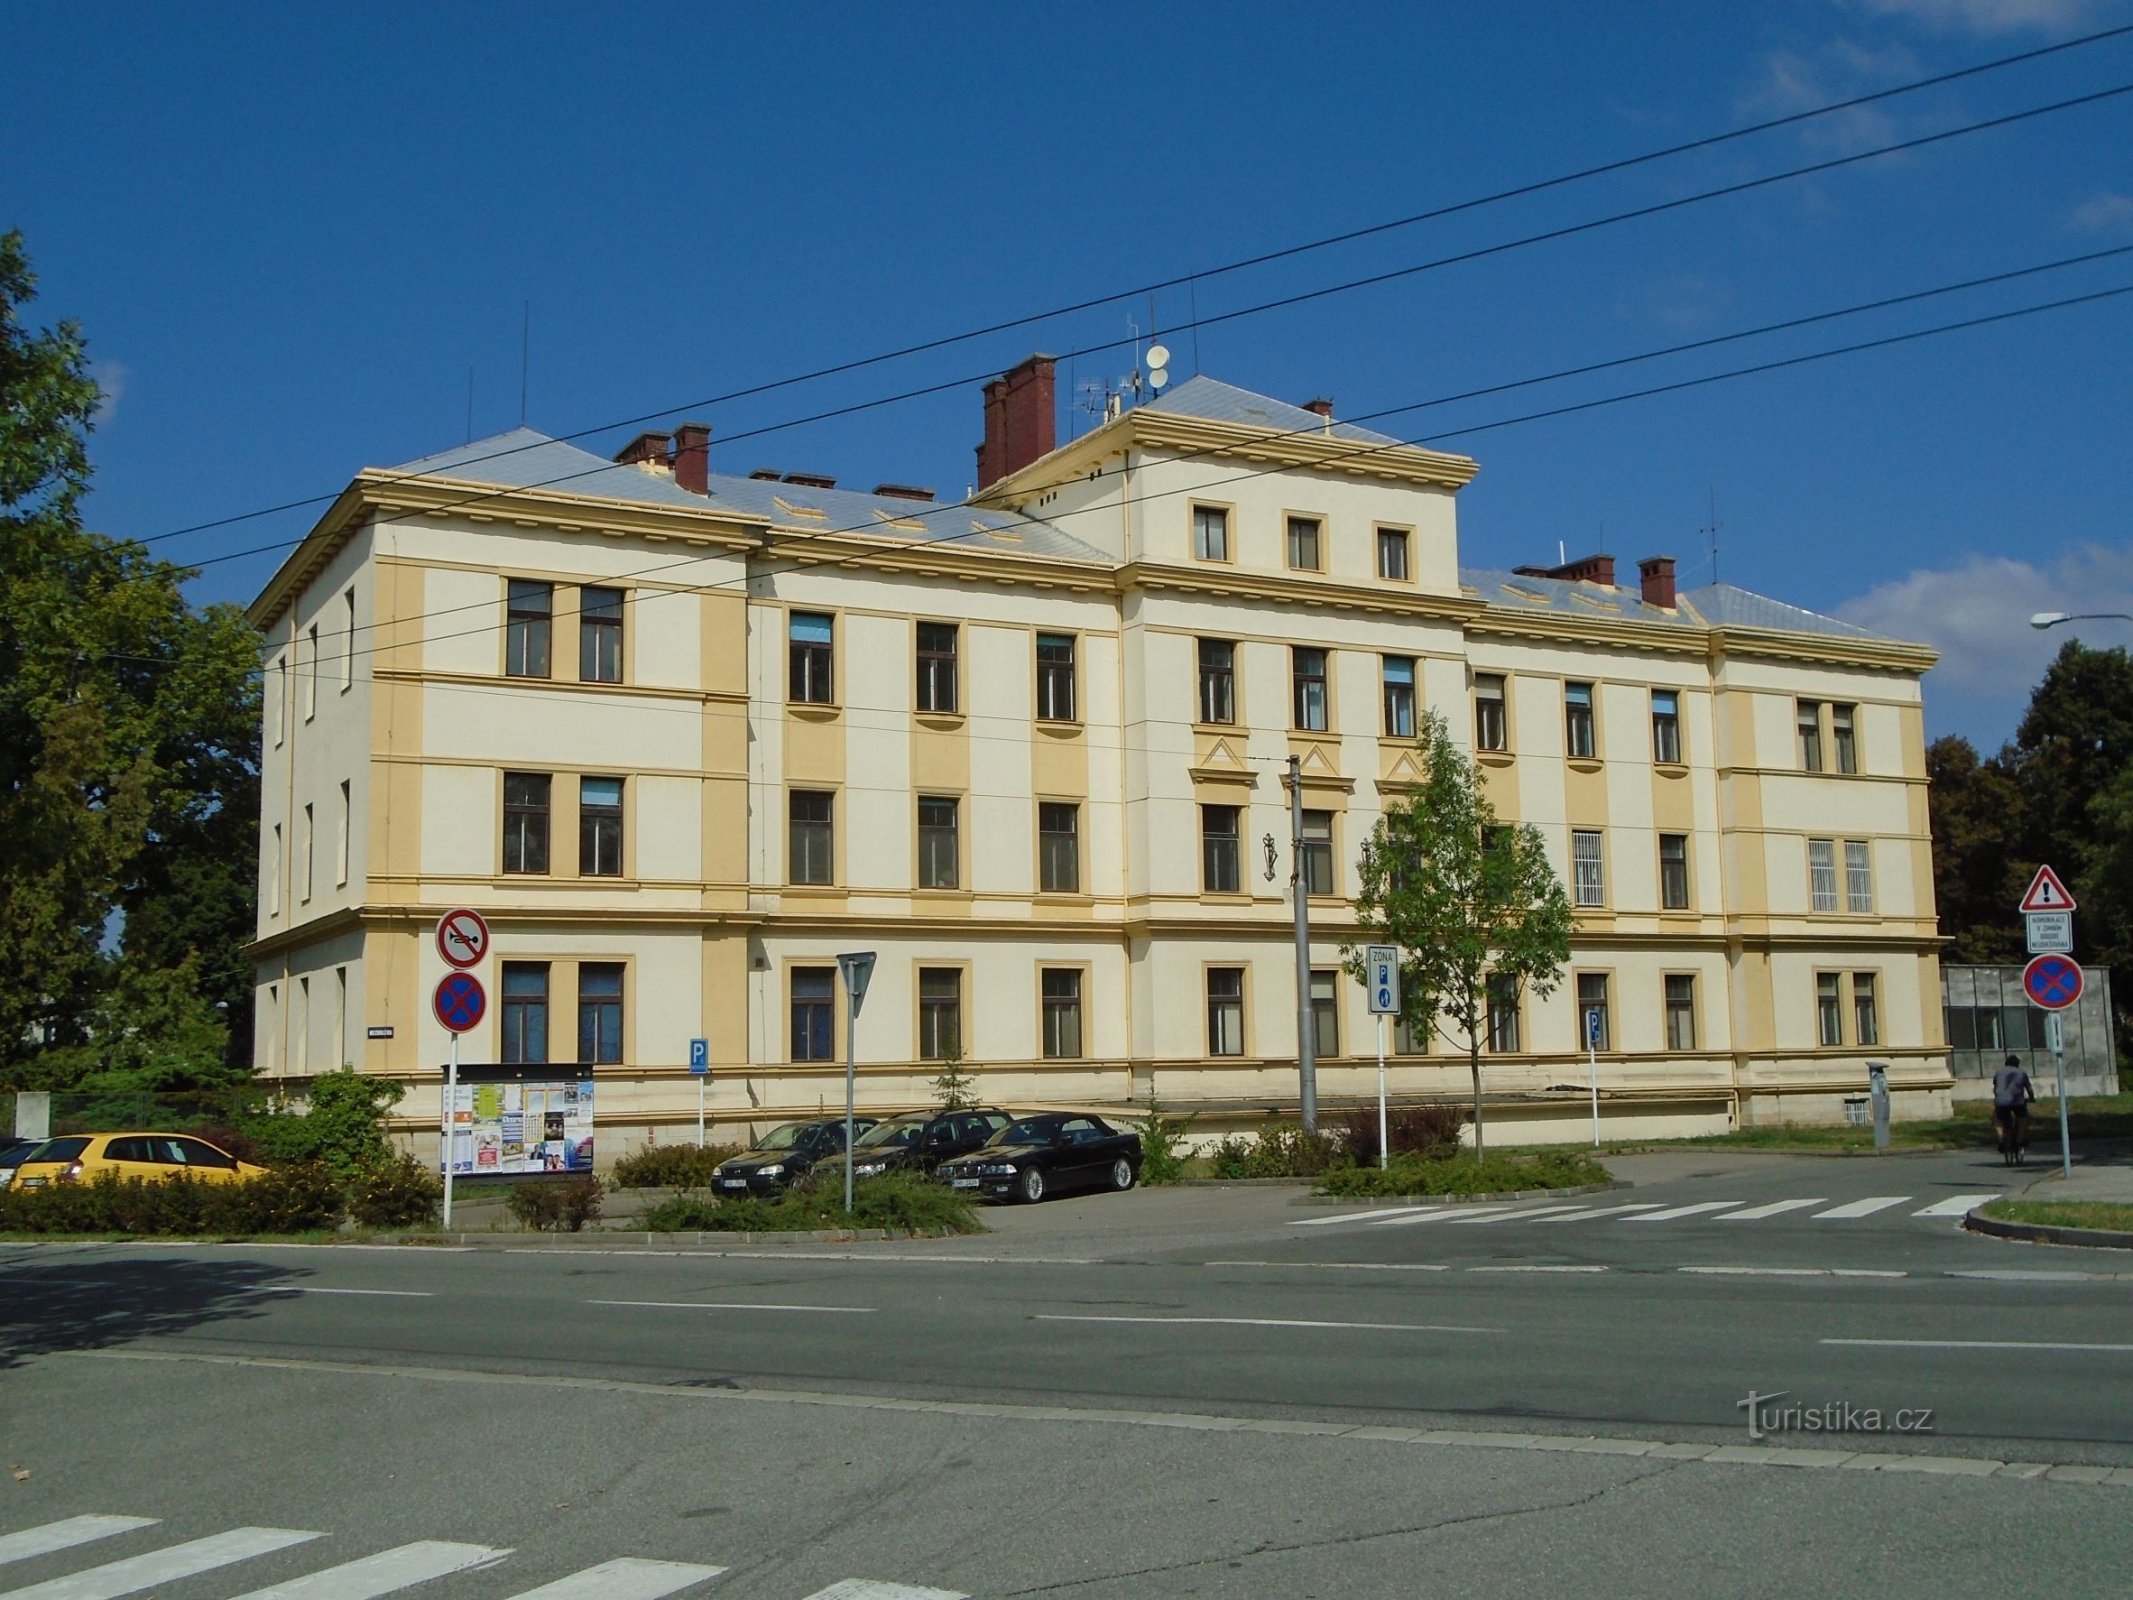 Стара лікарня (Градец Кралове, 2.9.2018 квітня XNUMX р.)